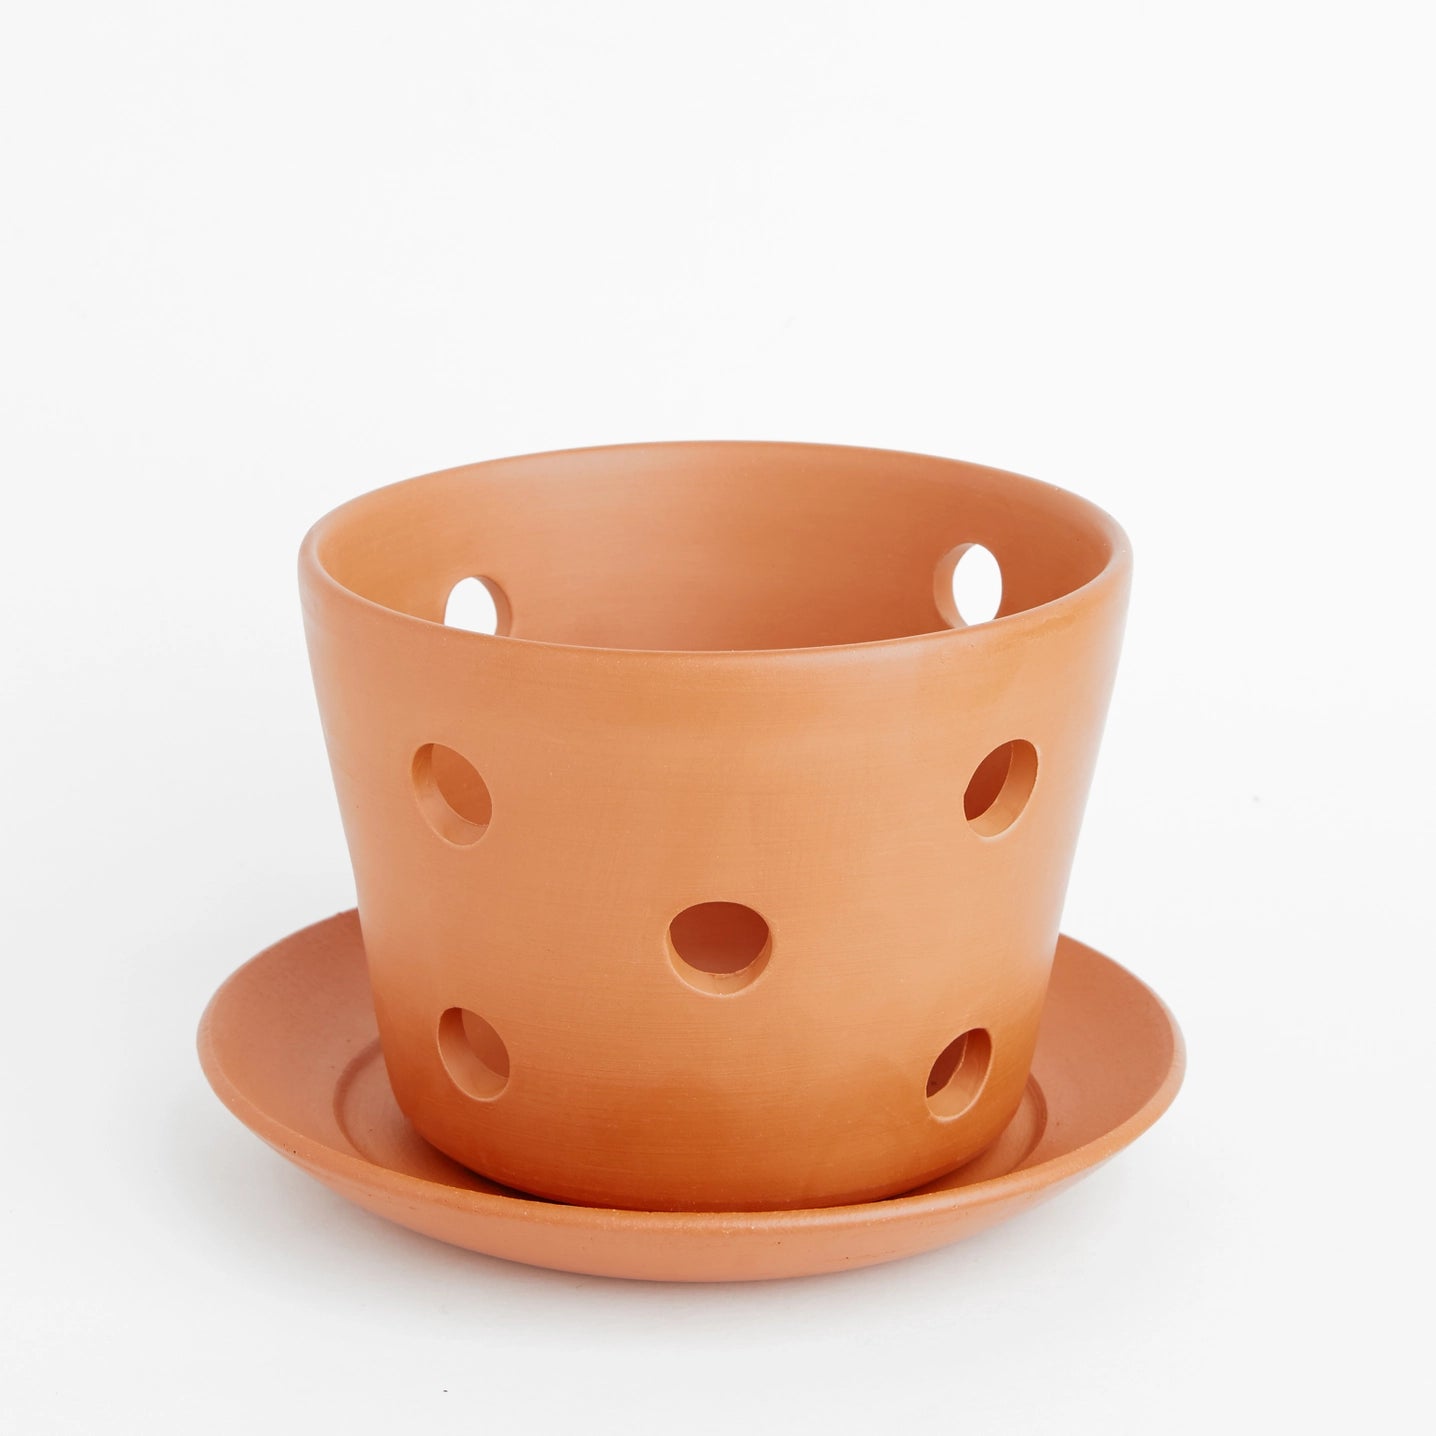 PALMER Clove Soft-as-Silk Terracotta Orchid Pot and Saucer - 4.5” Diameter